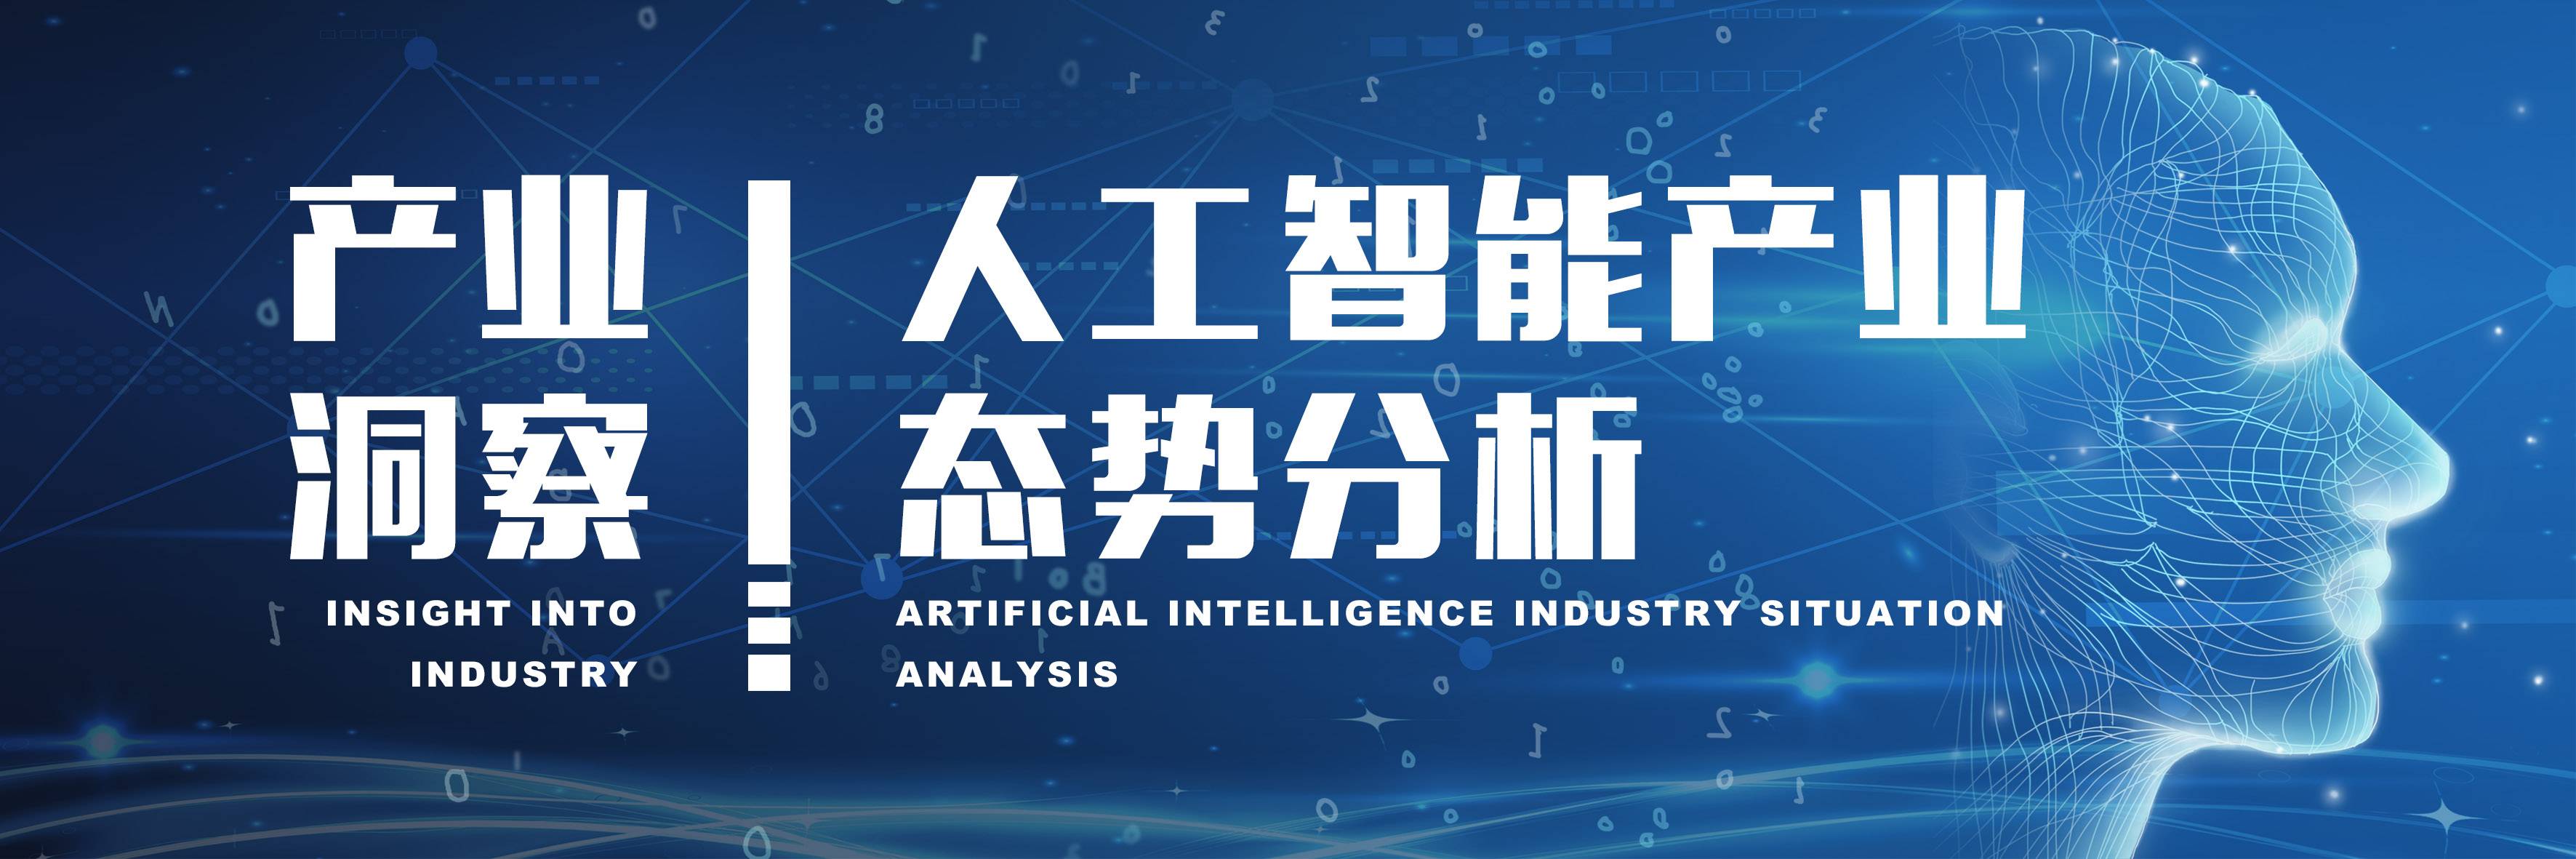 产业洞察丨人工智能产业态势分析